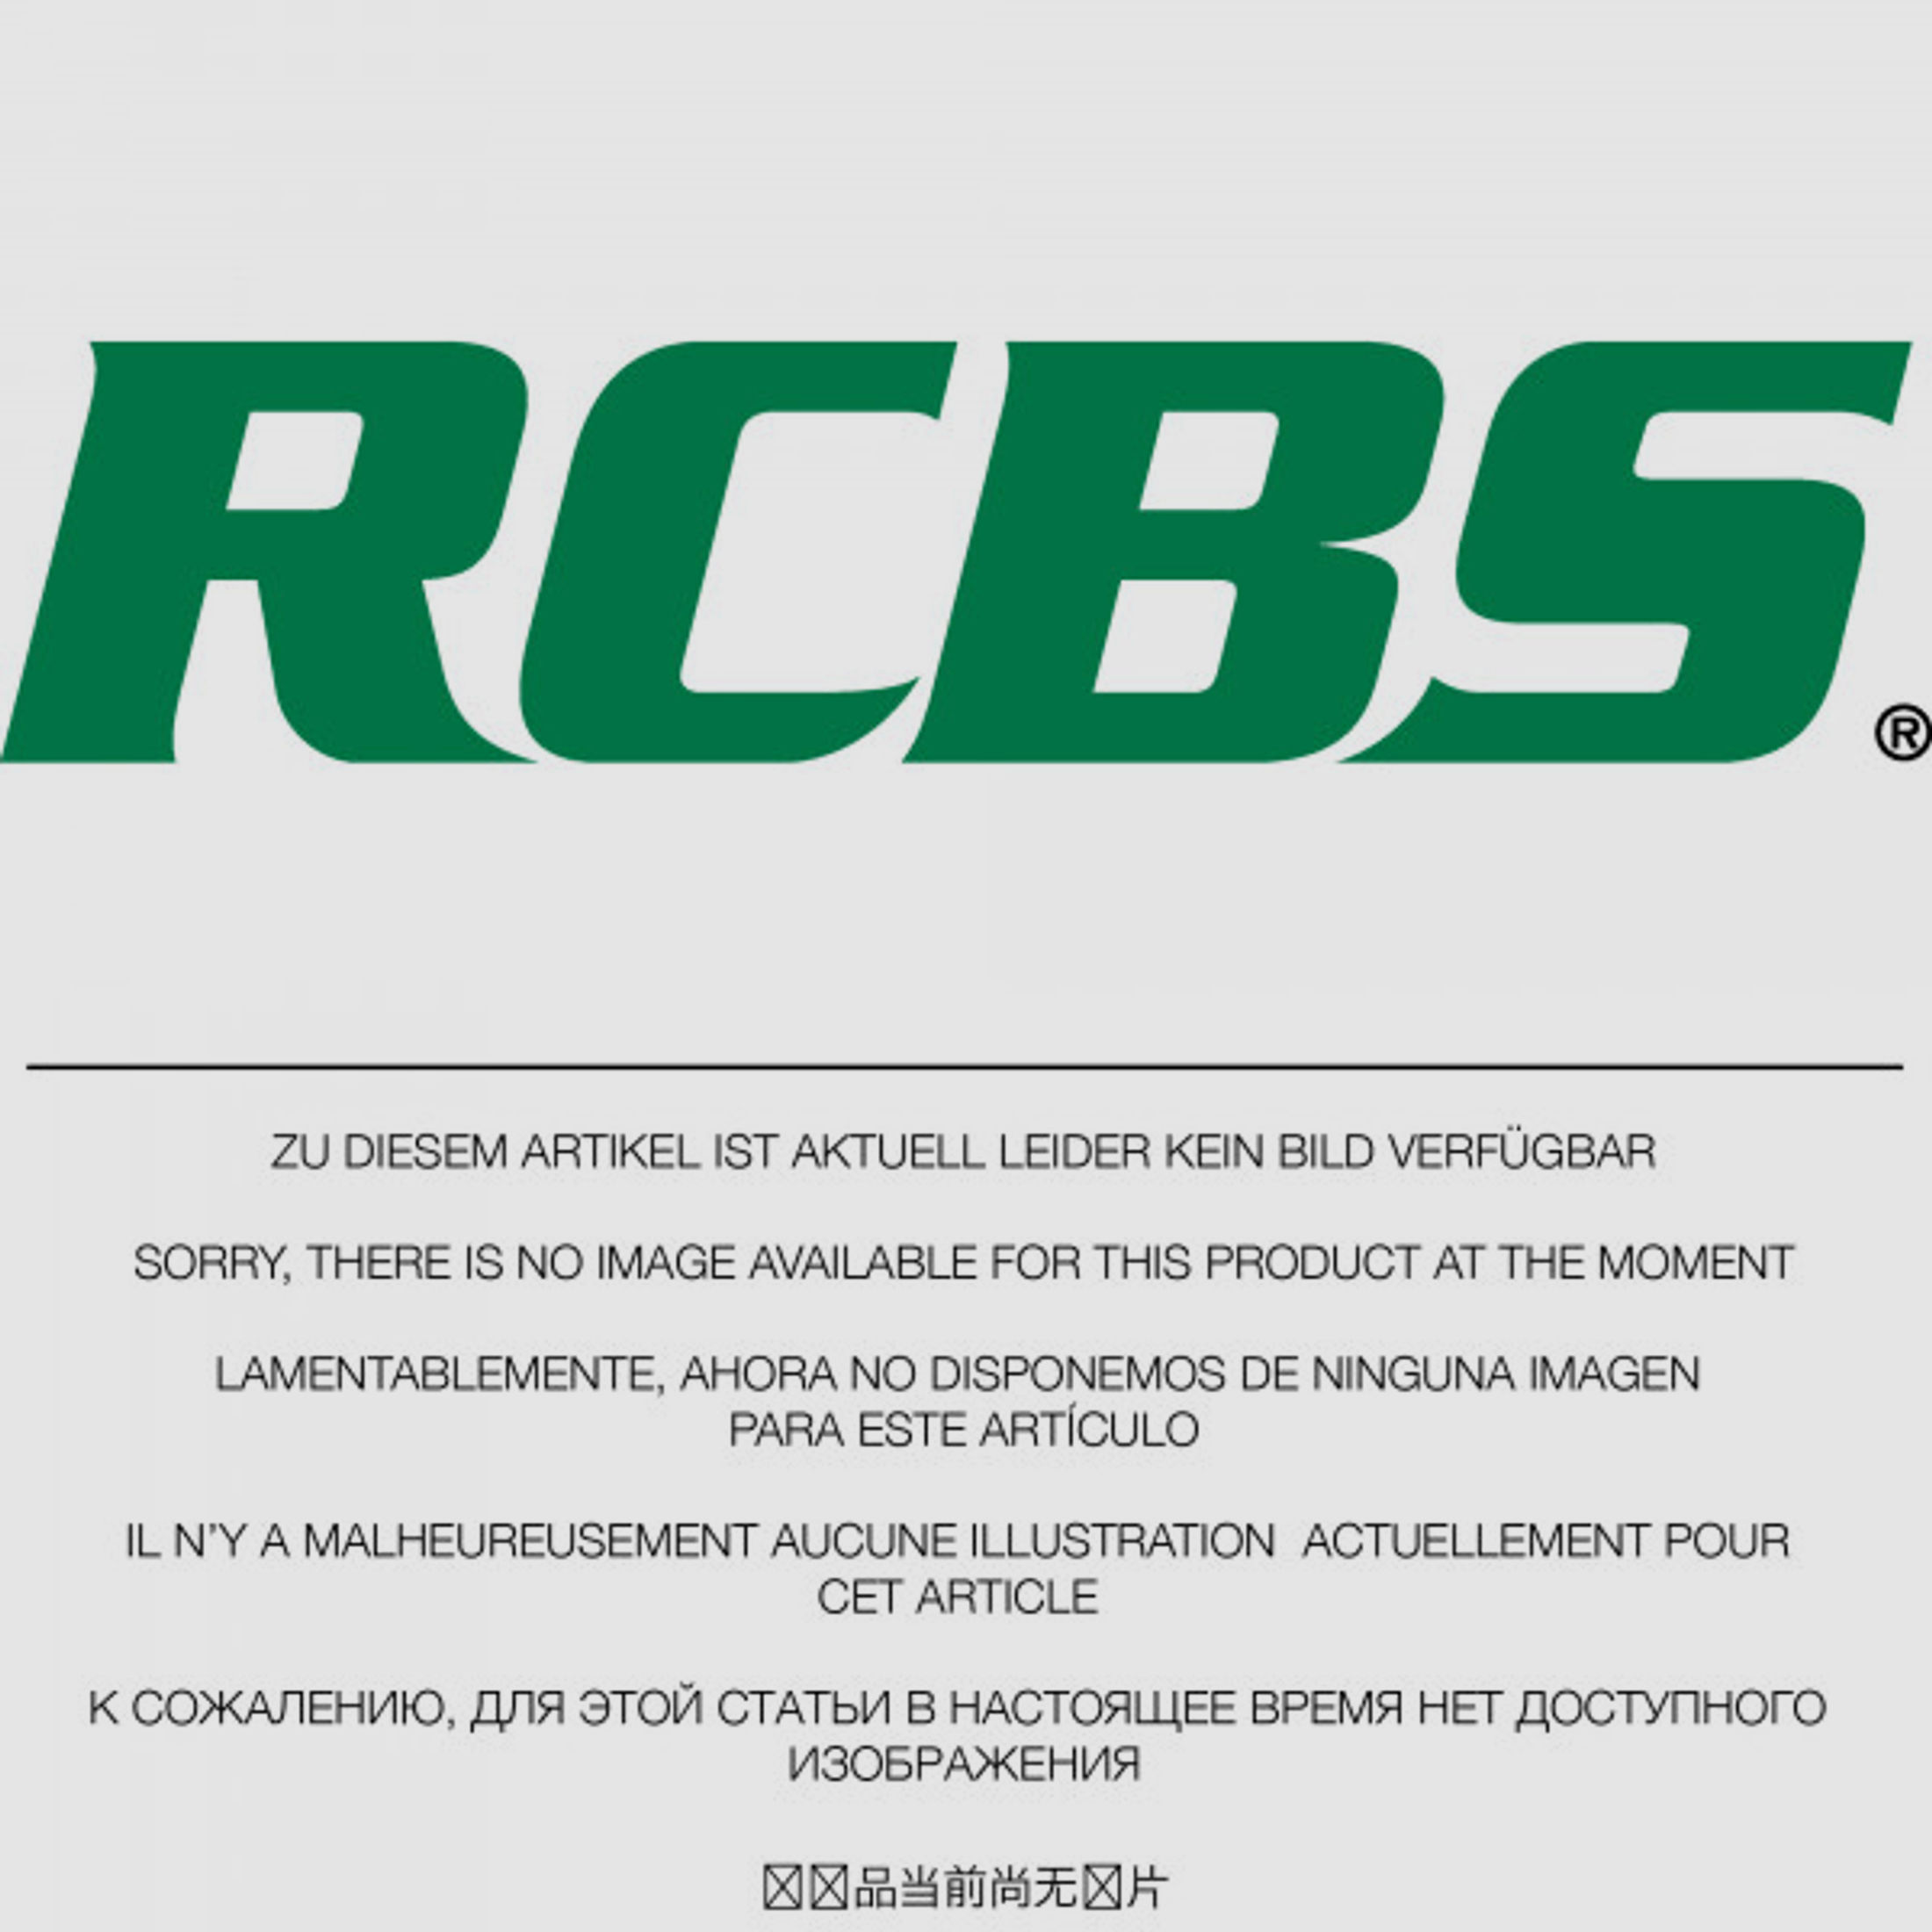 RCBS Lube-A-Matic Top Punch Geschoss Setzstempel Nr. 630 #85630